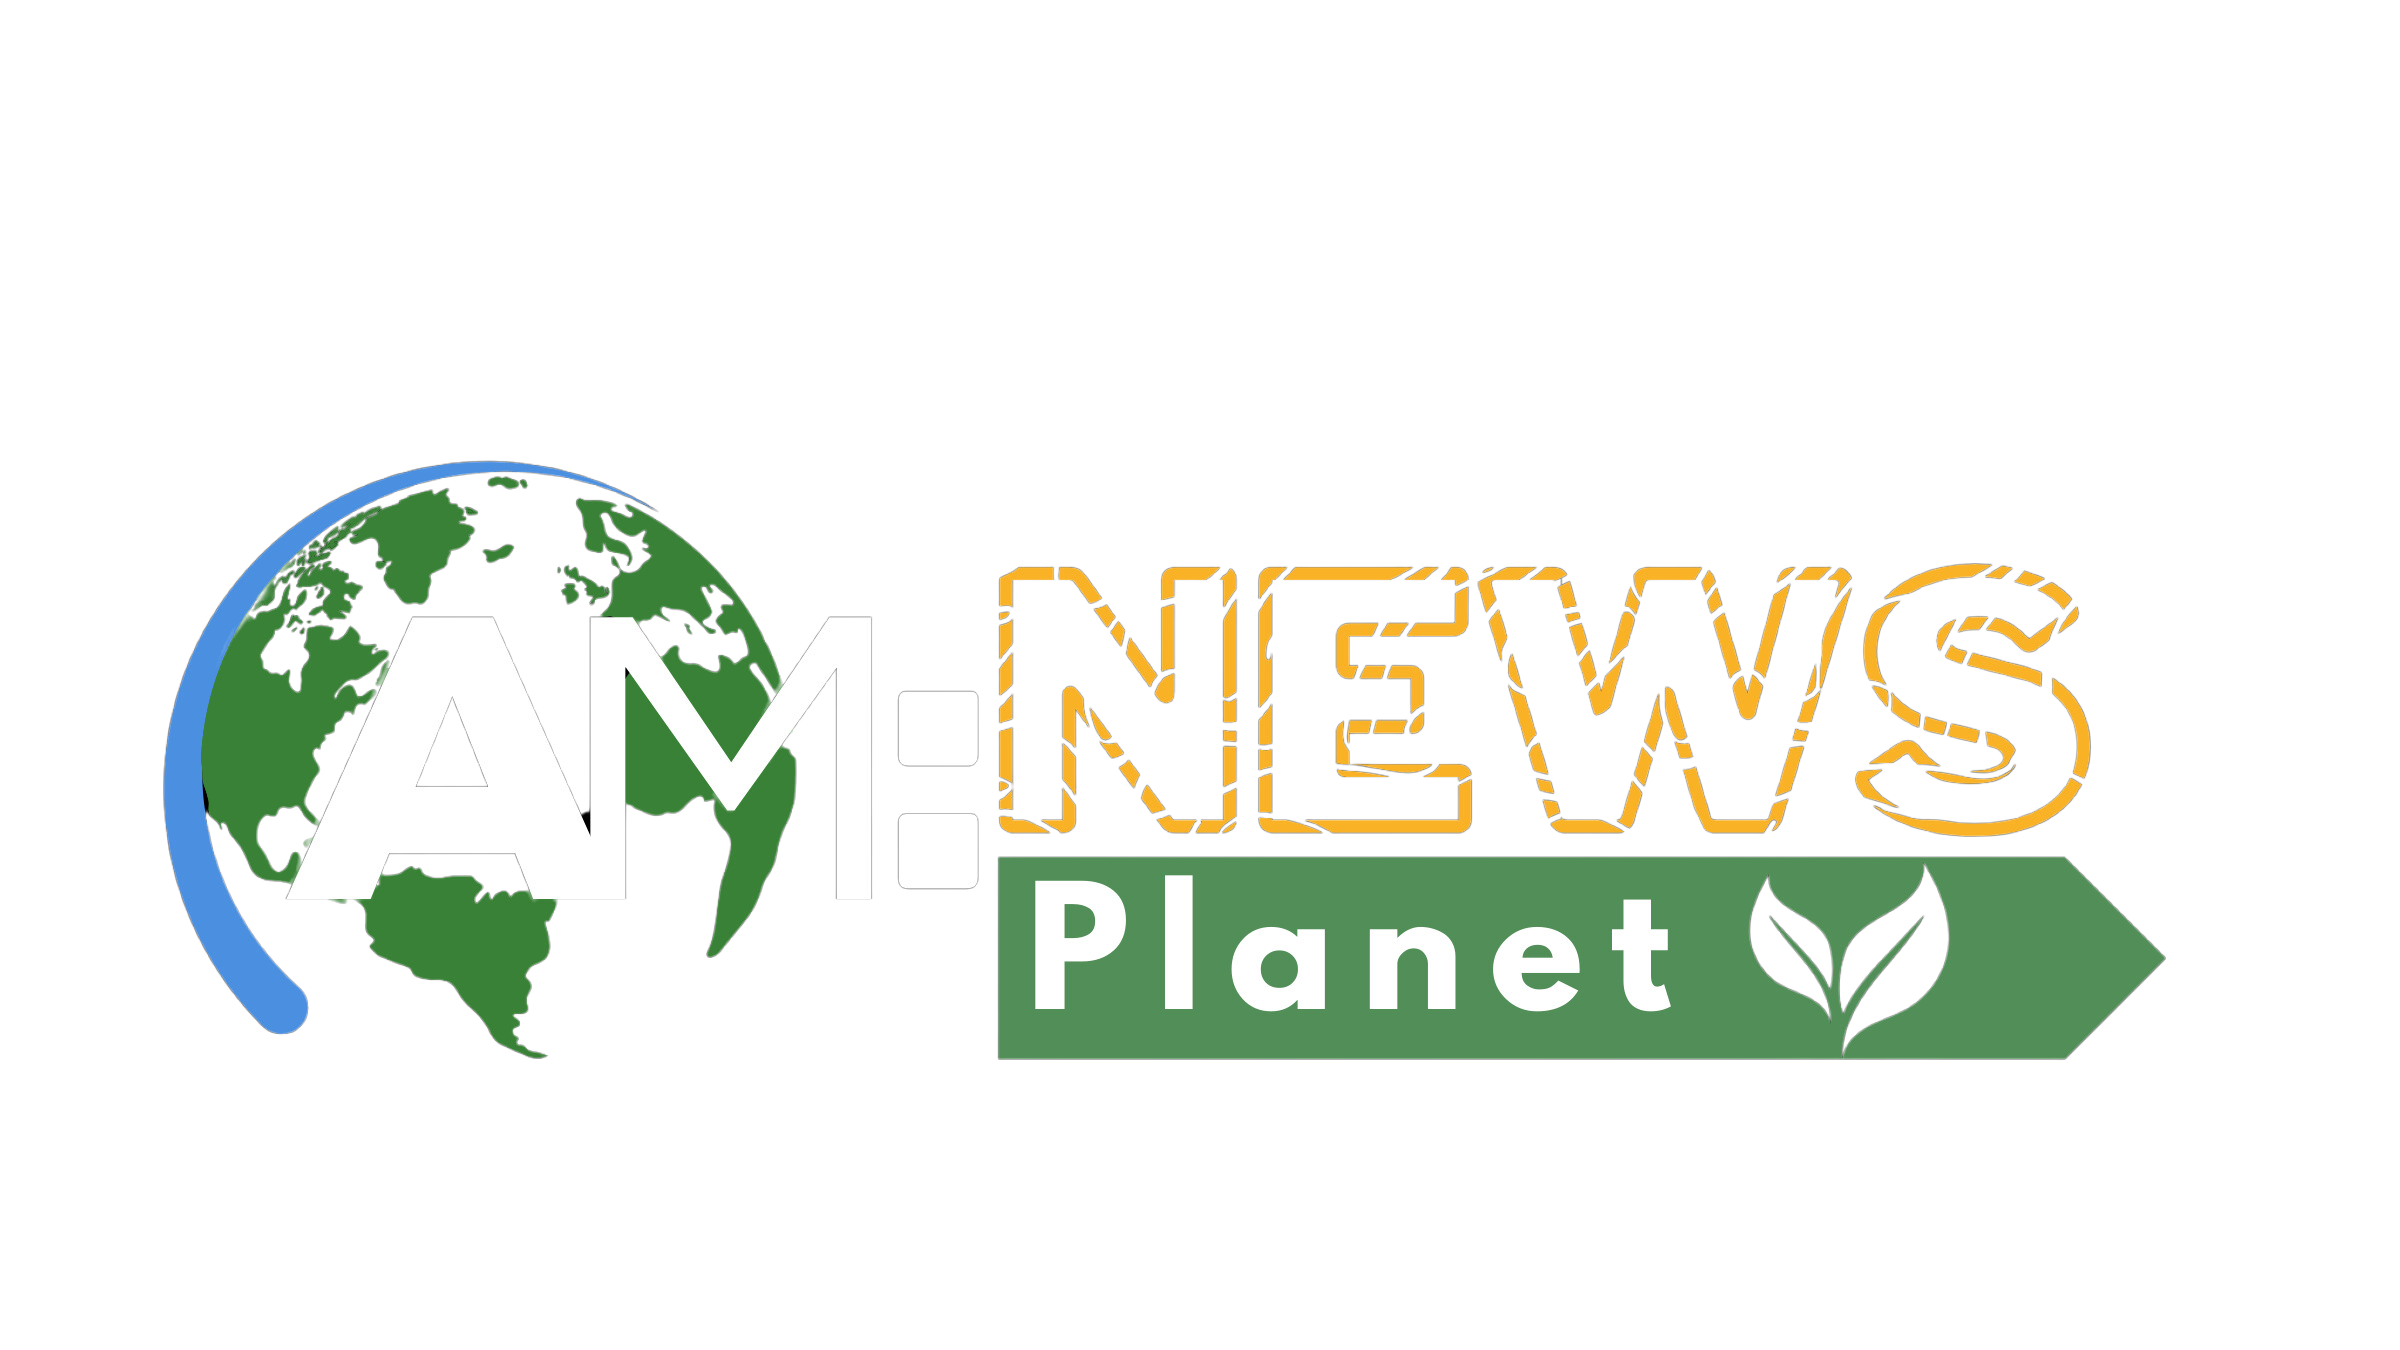 AM News Planet